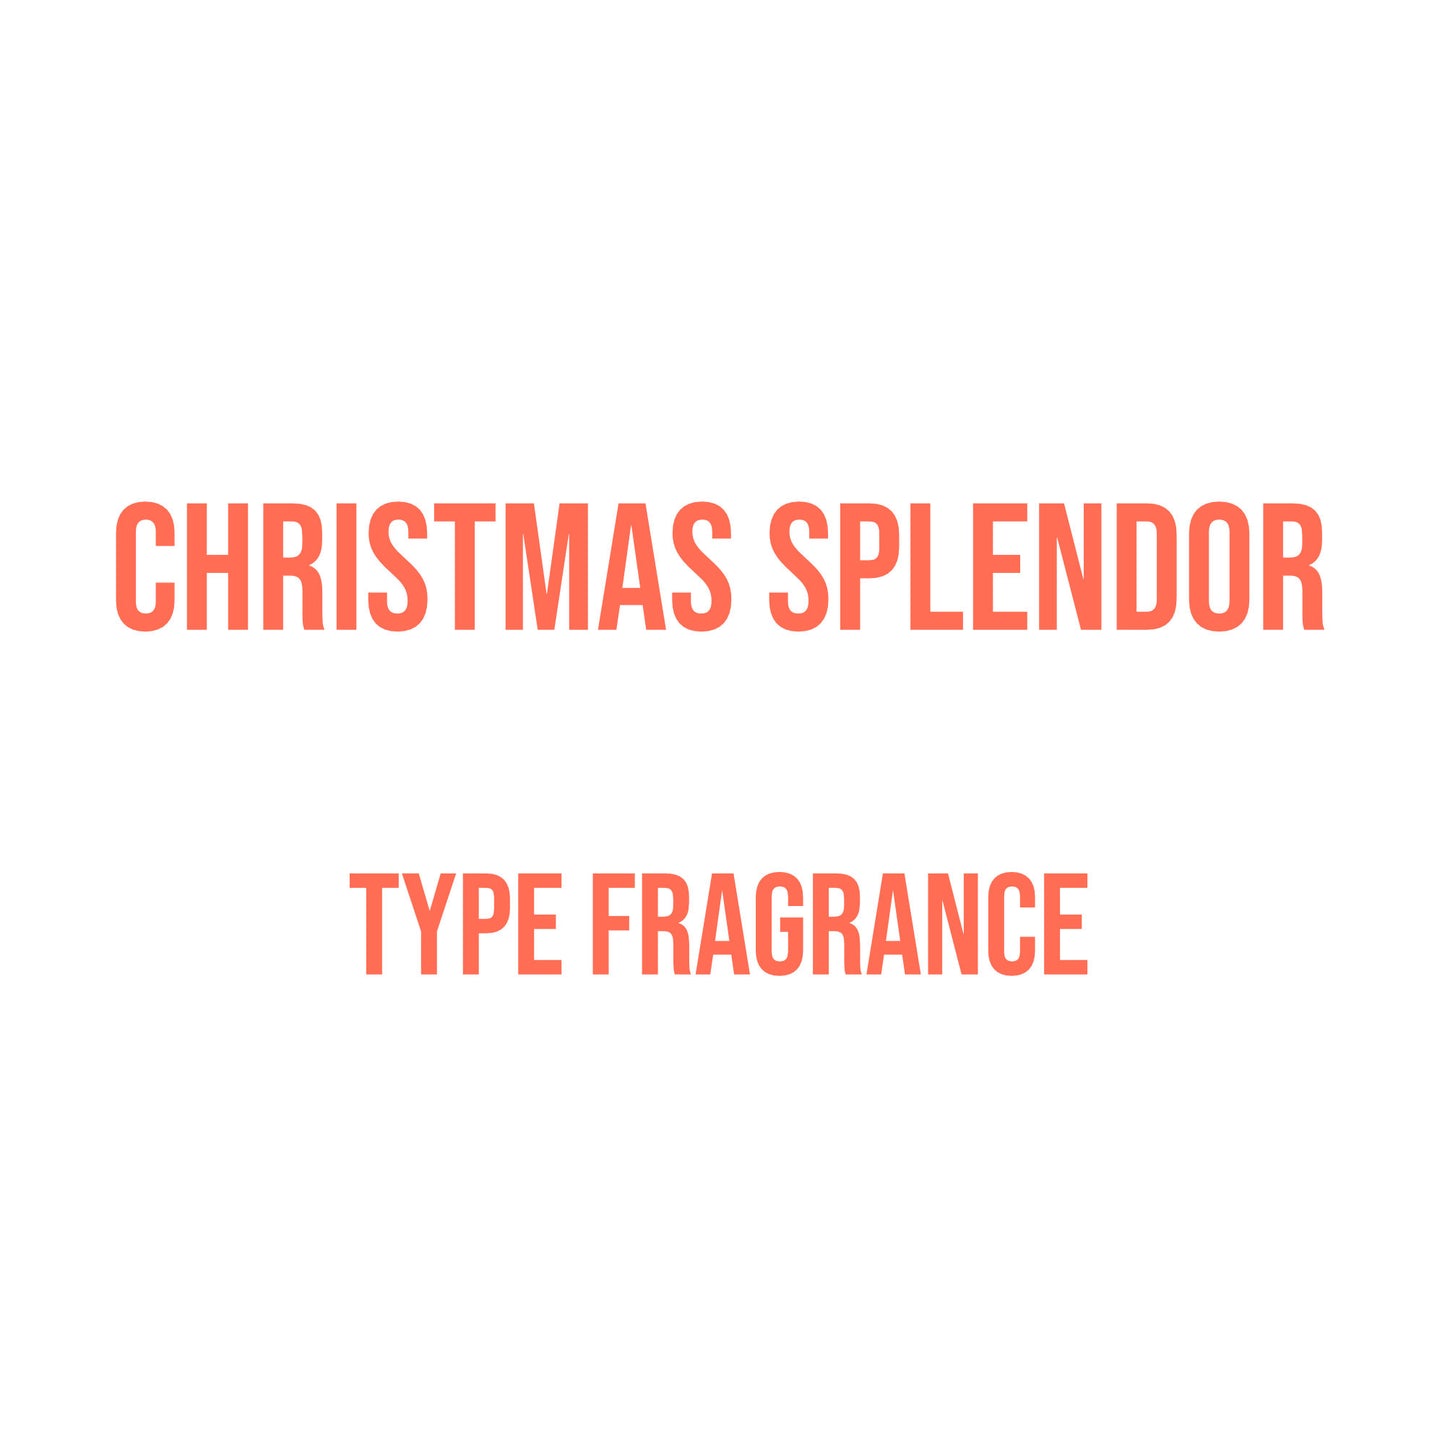 Christmas Splendor Type Fragrance